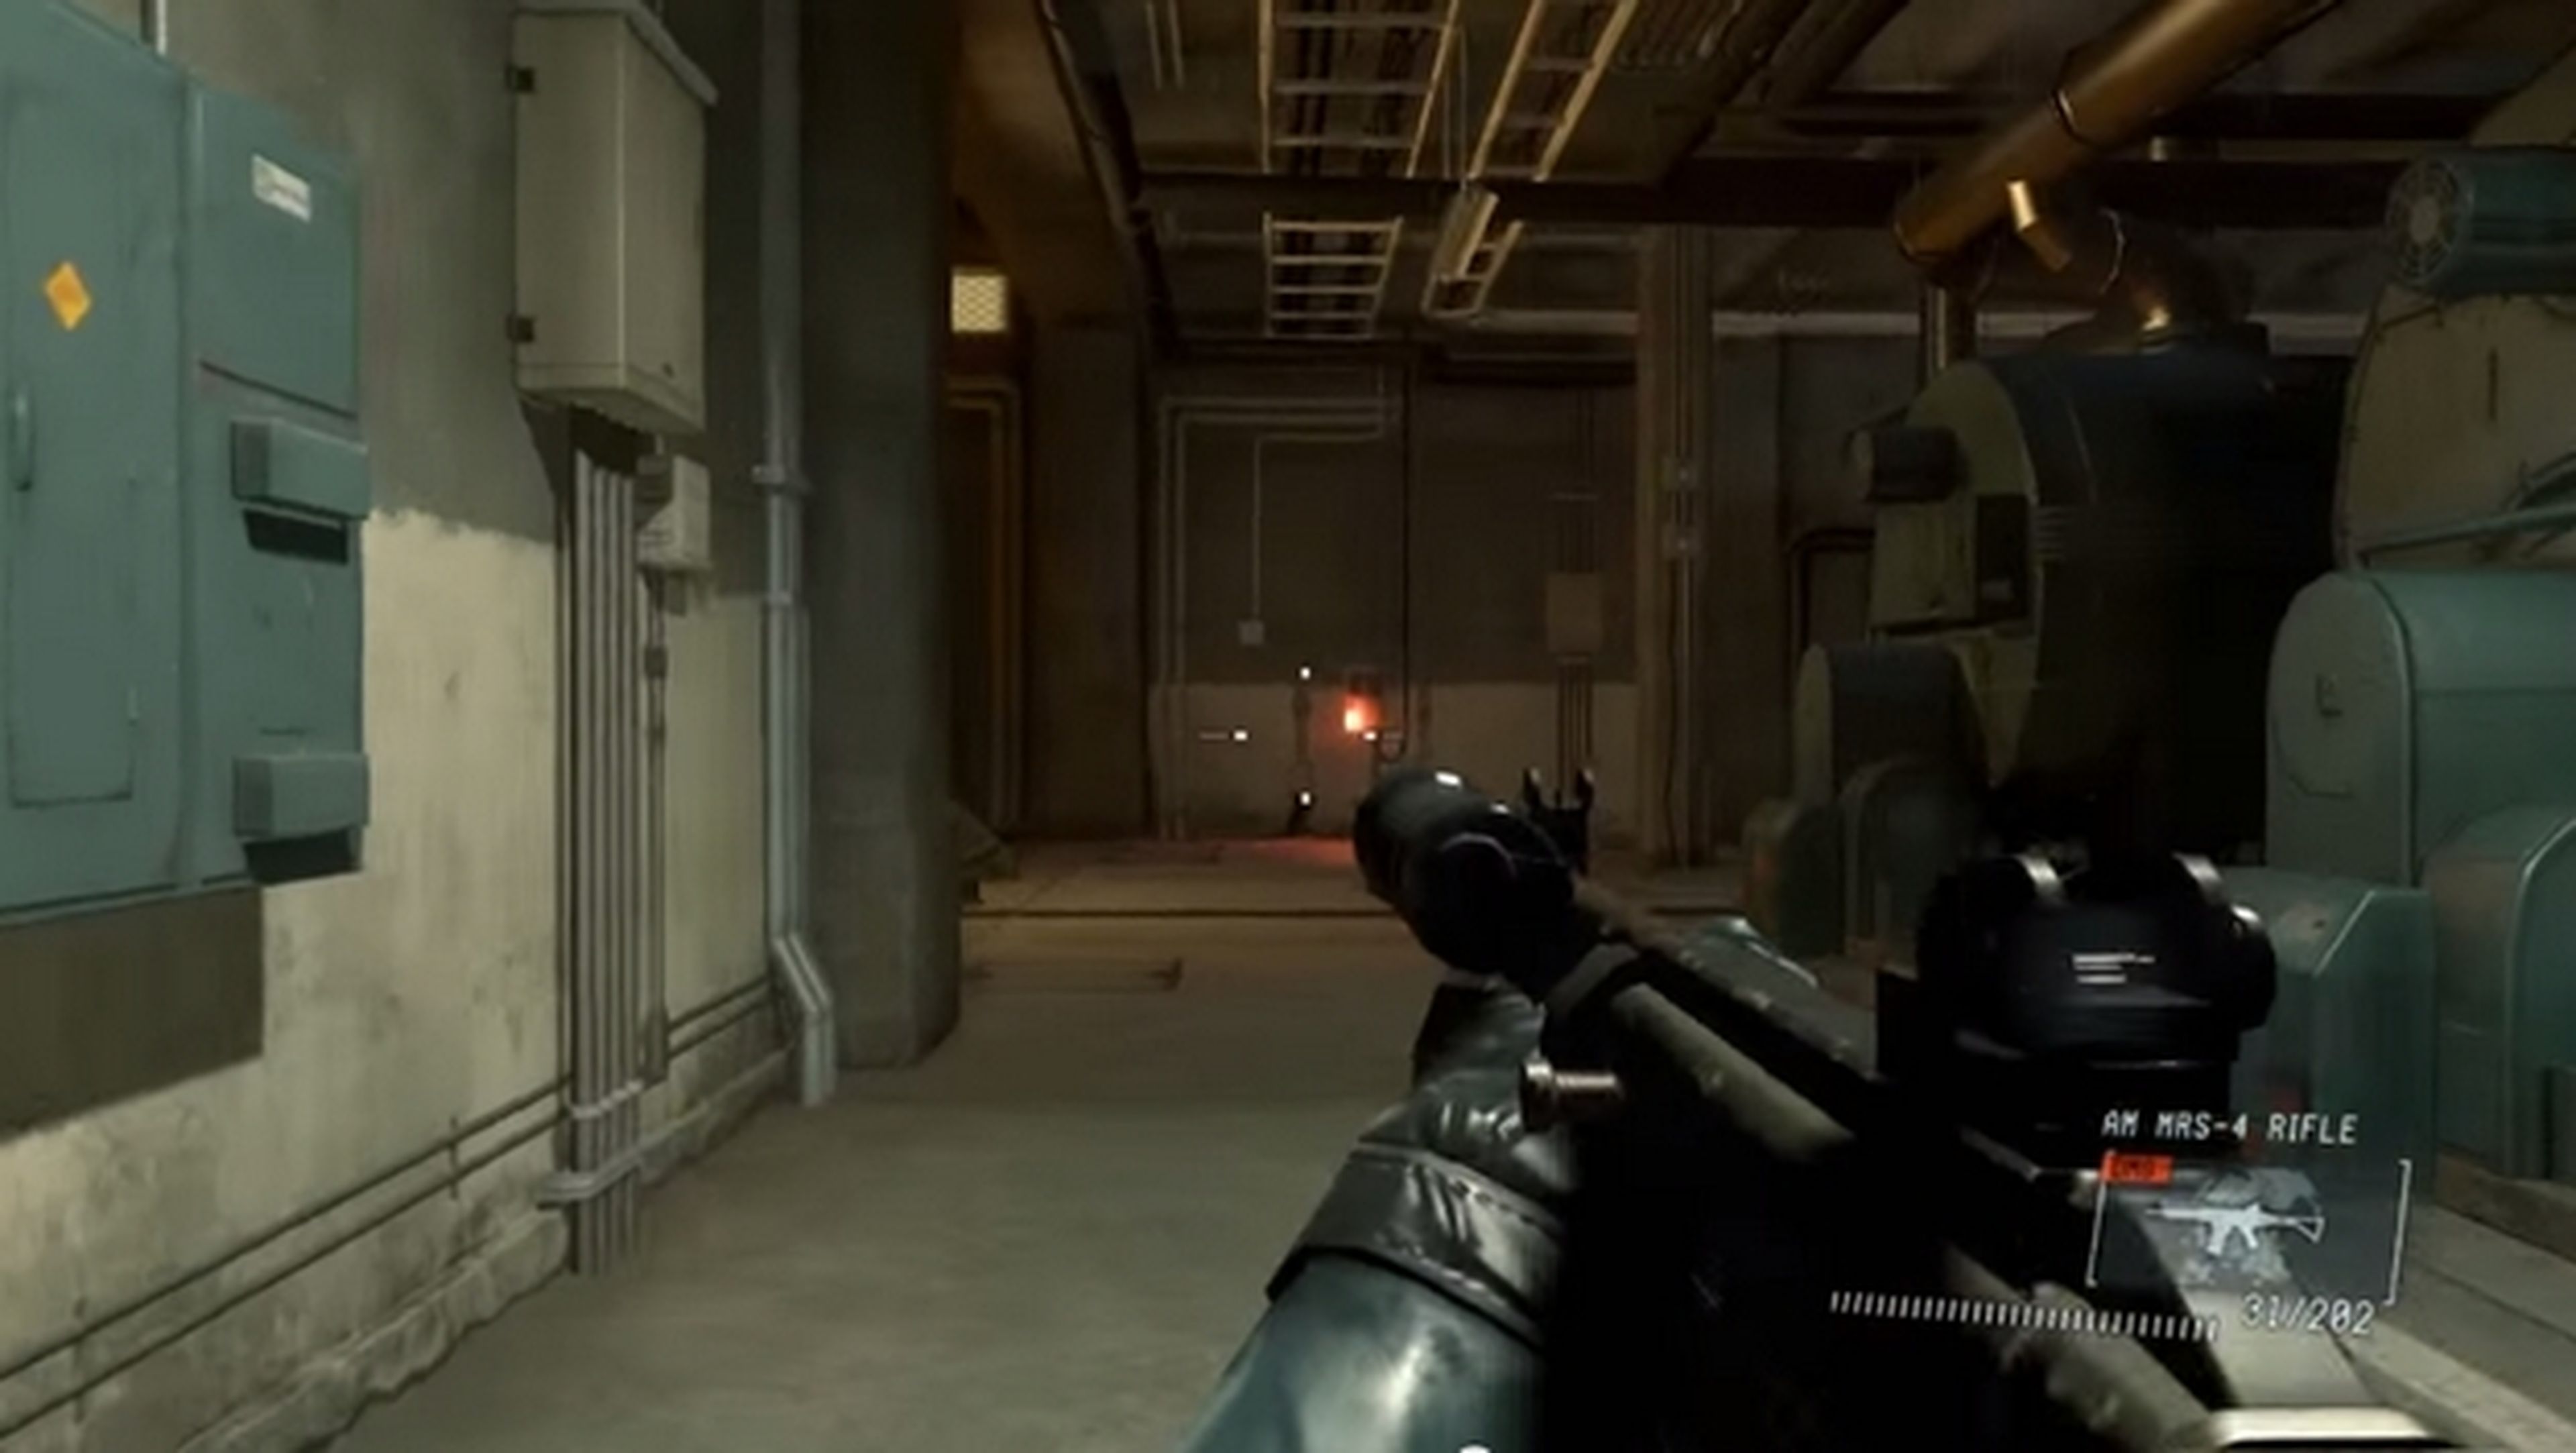 El MOD para jugar a Metal Gear Solid V en primera persona en PC.